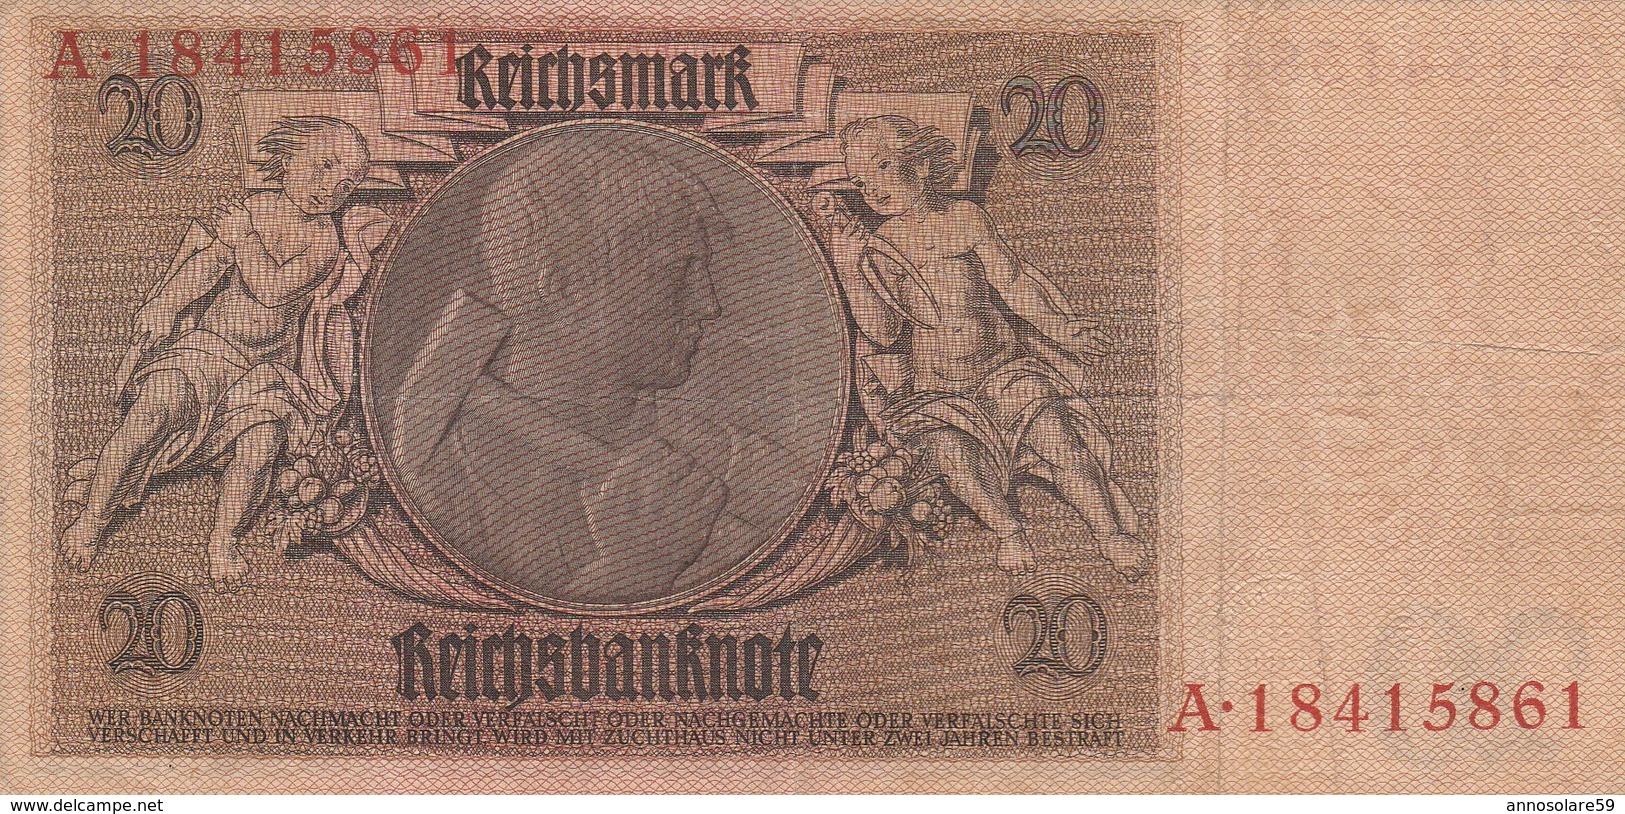 BANCONOTA GERMANIA 20 MARCHI BERLINO, REICH 1929 - LETTERA A - ORIGINALE 100% - LEGGI - 20 Mark